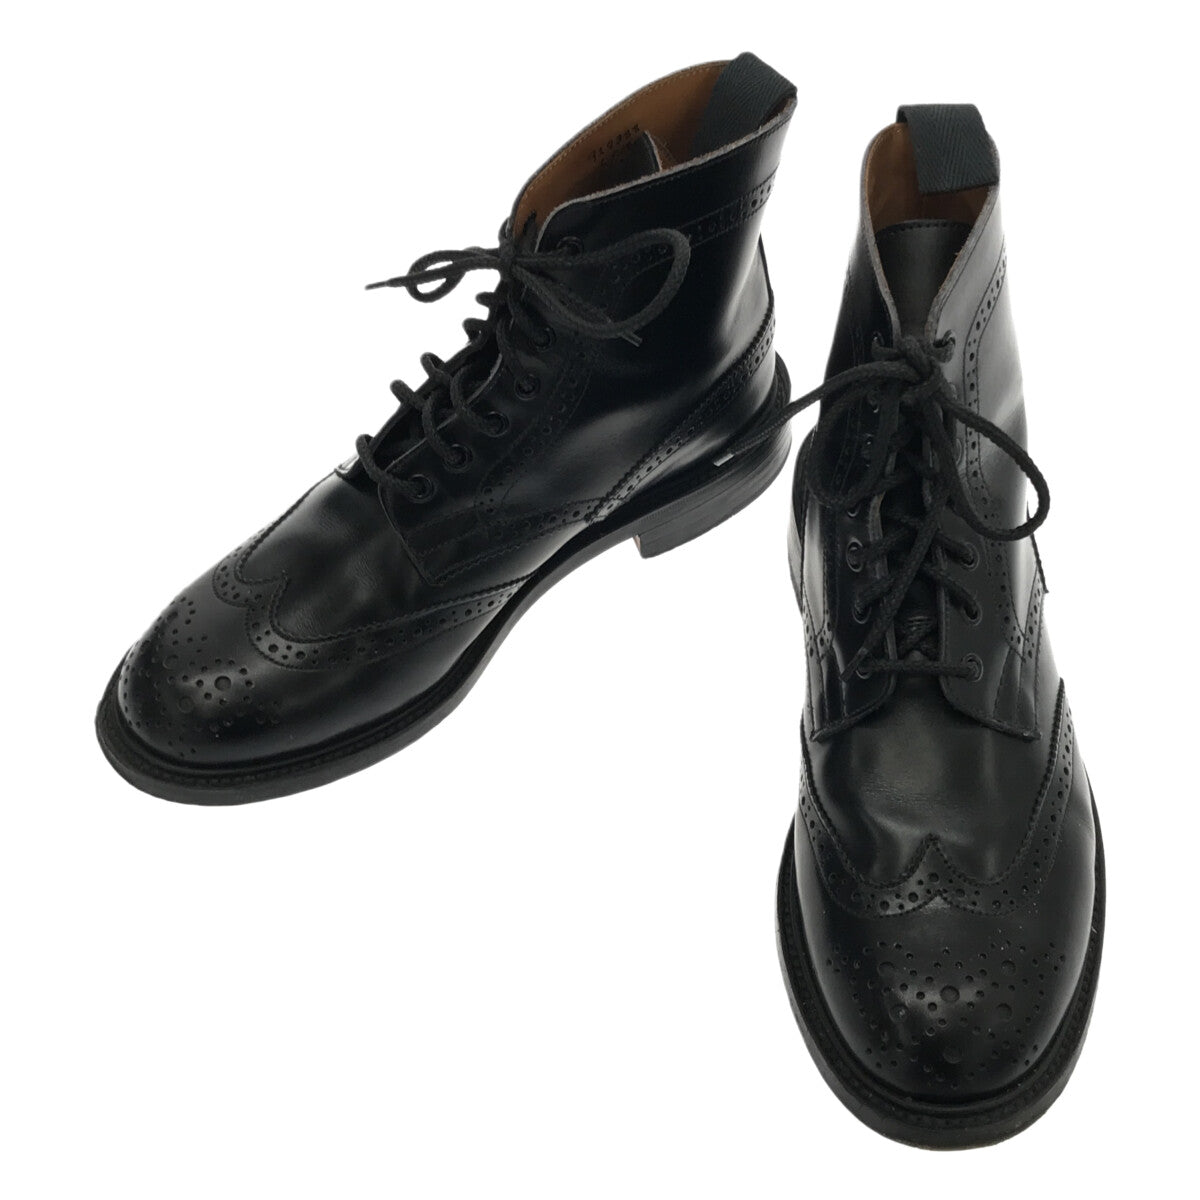 メンズトリッカーズ／Tricker's レースアップブーツ シューズ 靴 メンズ 男性 男性用スエード スウェード レザー 革 本革 オフホワイト 白 ホワイト  M2508 MALTON モールトン Brogue Boots ダブルソール カントリーブーツ ウイングチップ 定番 グッドイヤーウェルト製法